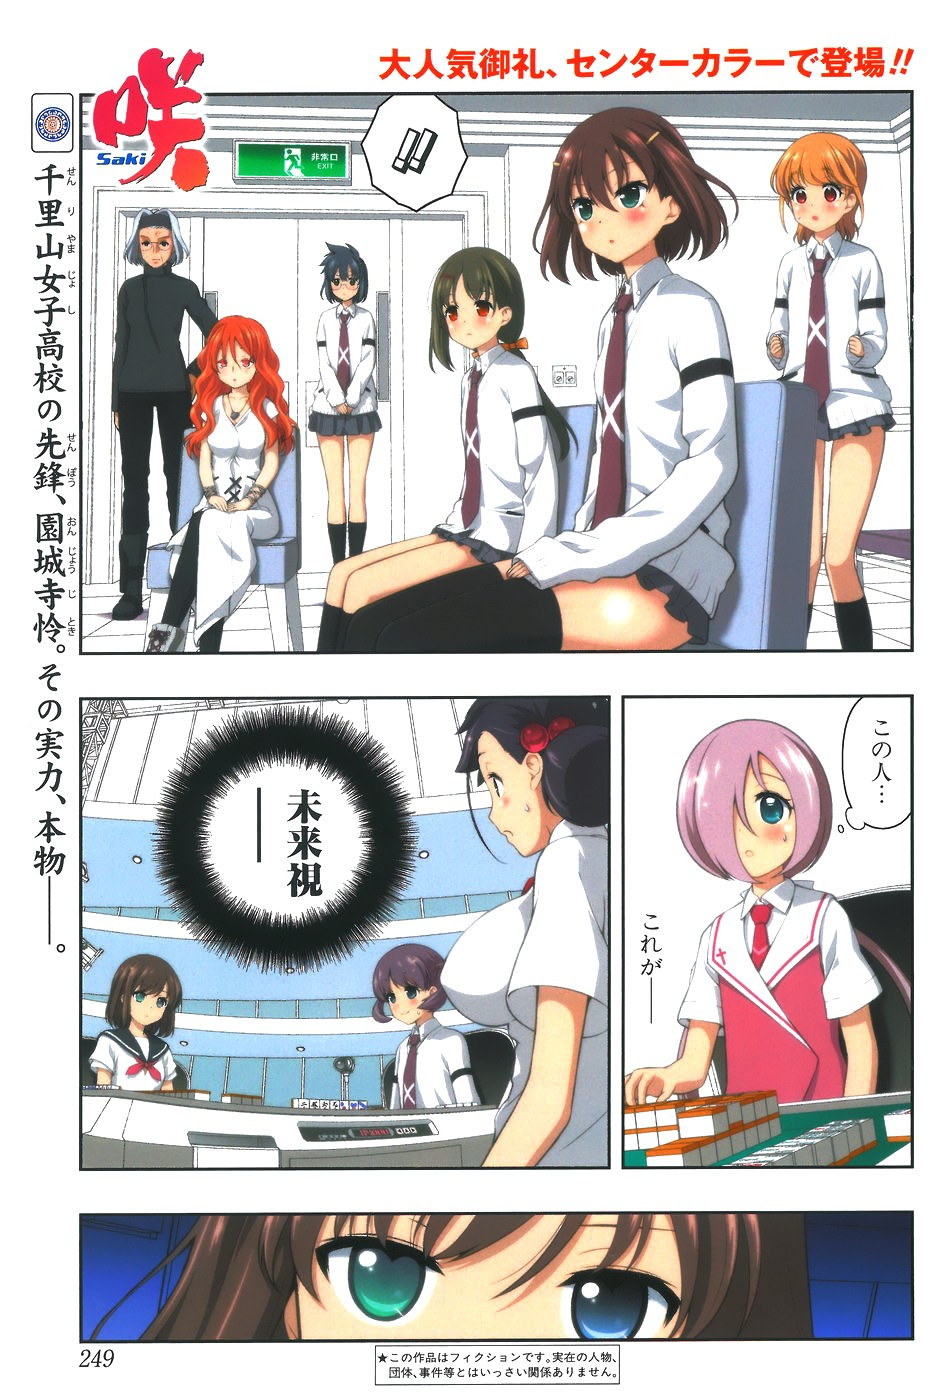 Saki Chapter 162 Page 1 Raw Sen Manga